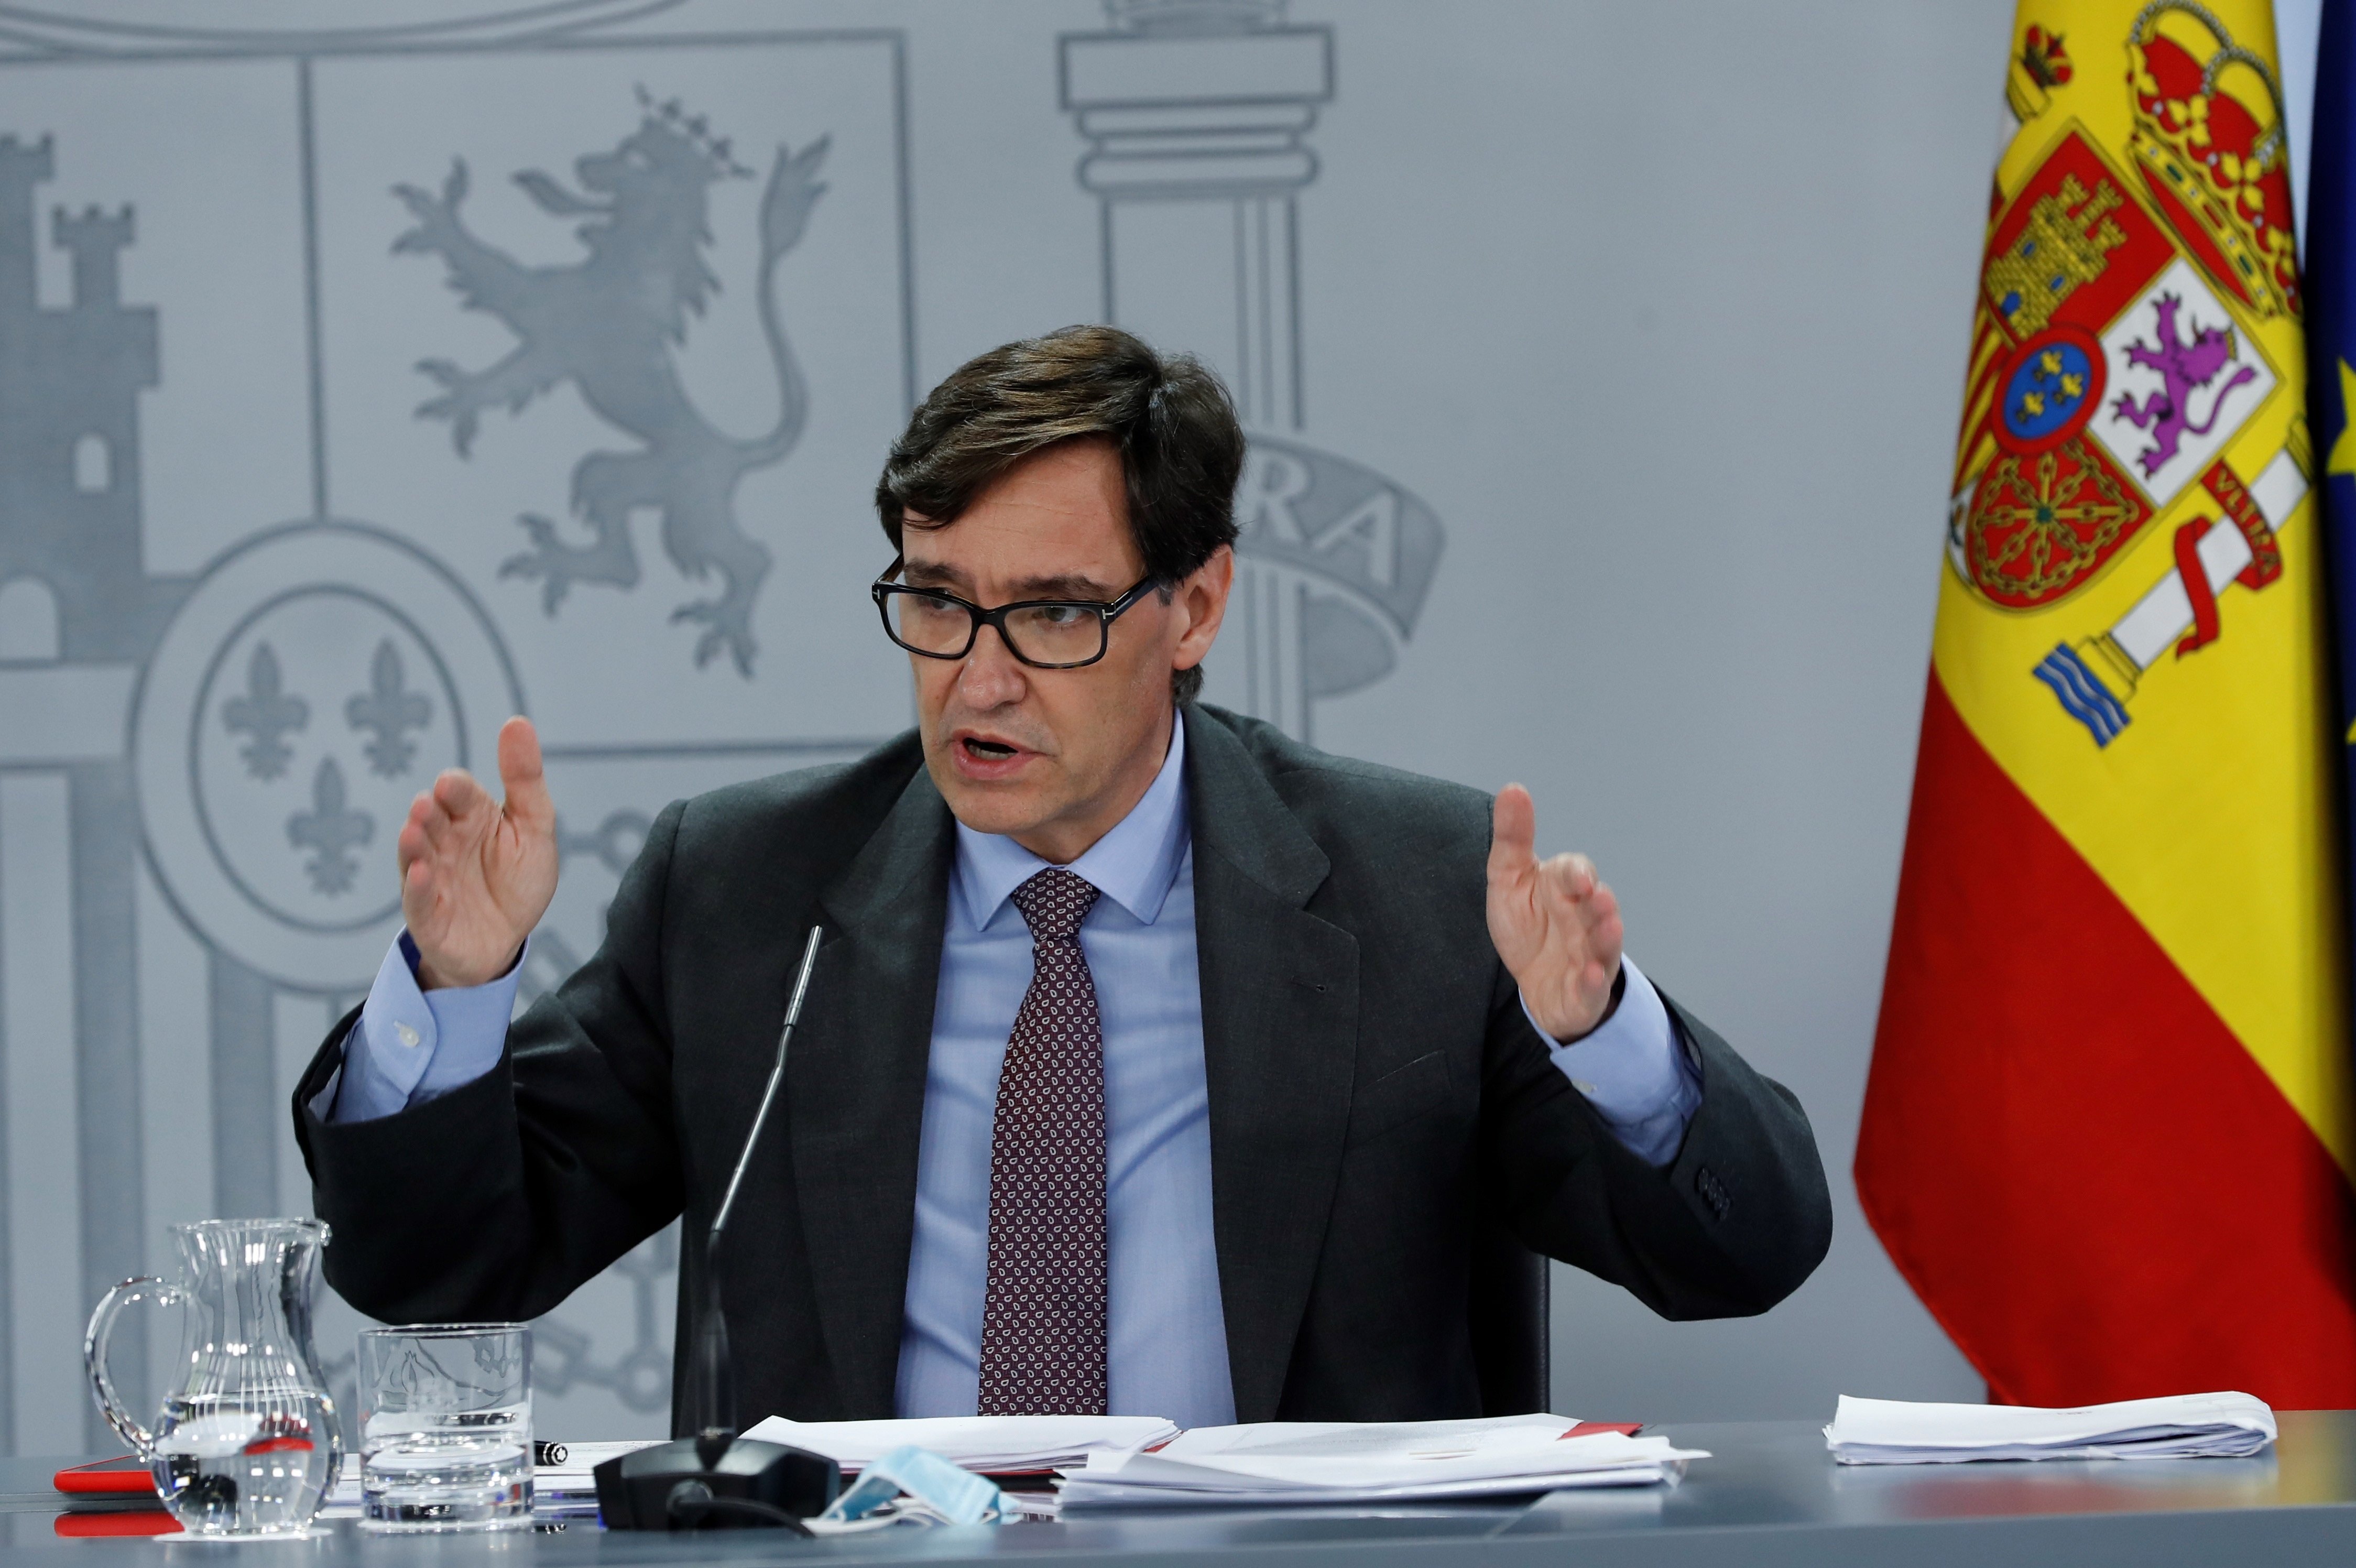 Illa avala la gestió de la Generalitat al Segrià: "L’important és actuar"